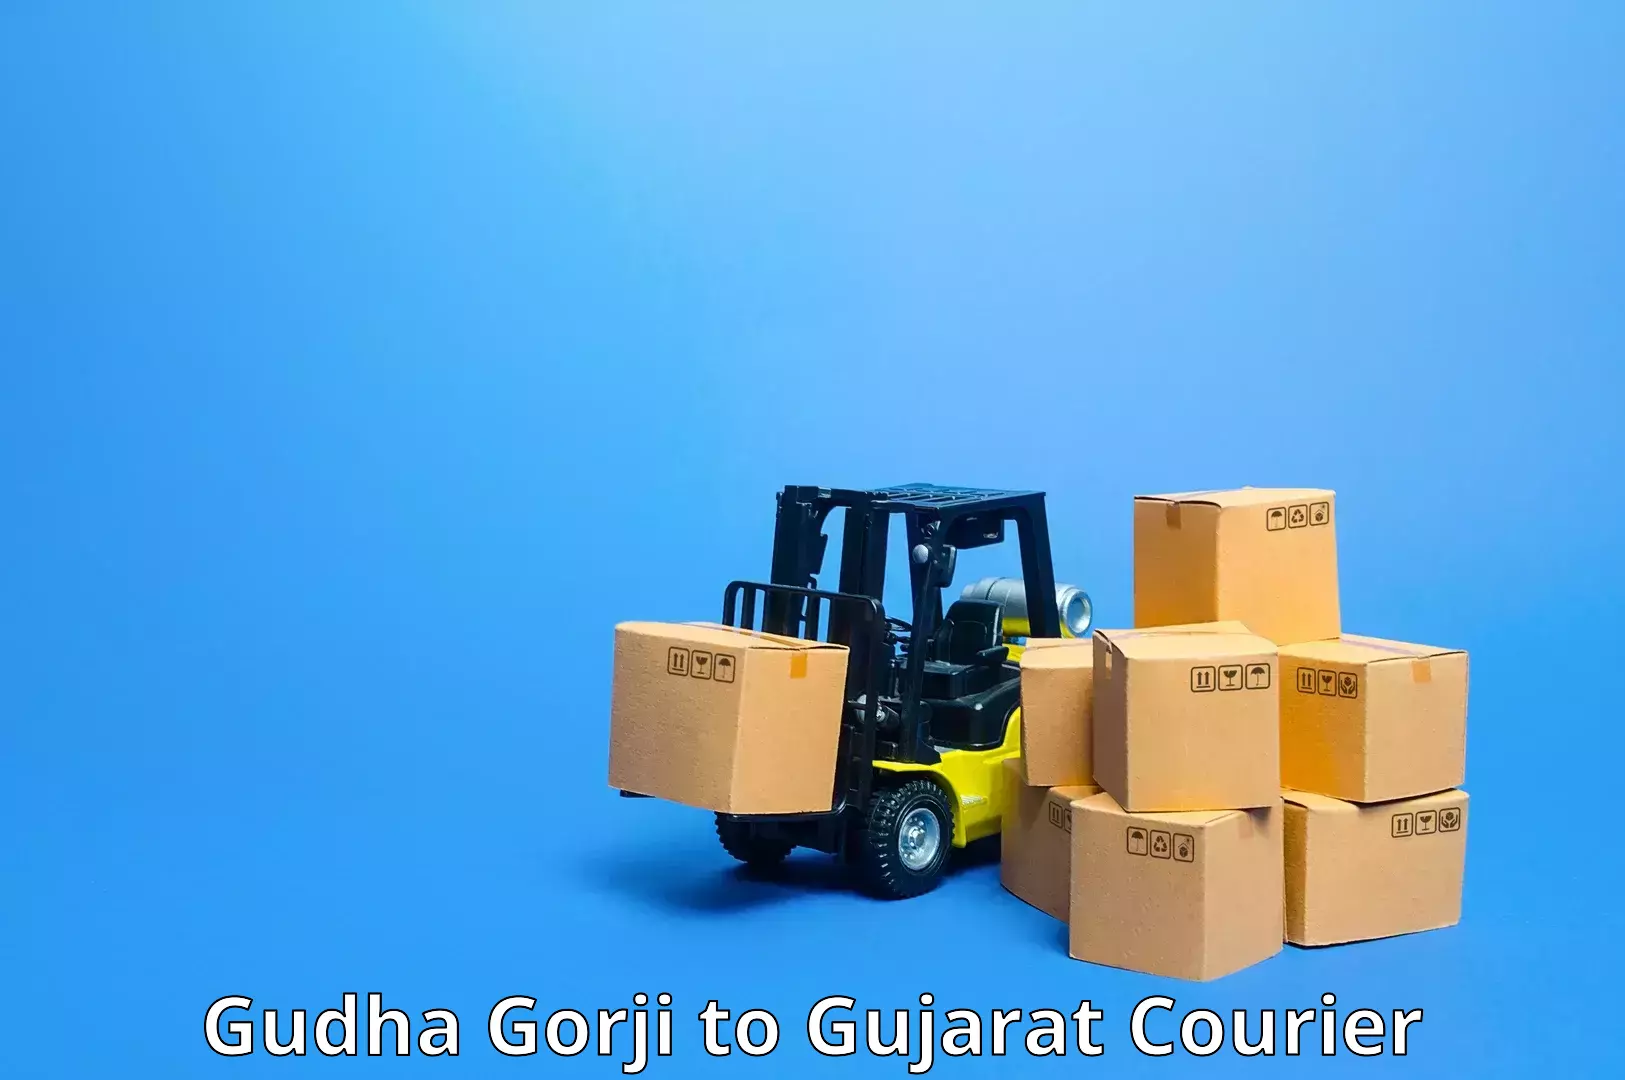 Express shipping in Gudha Gorji to Halol